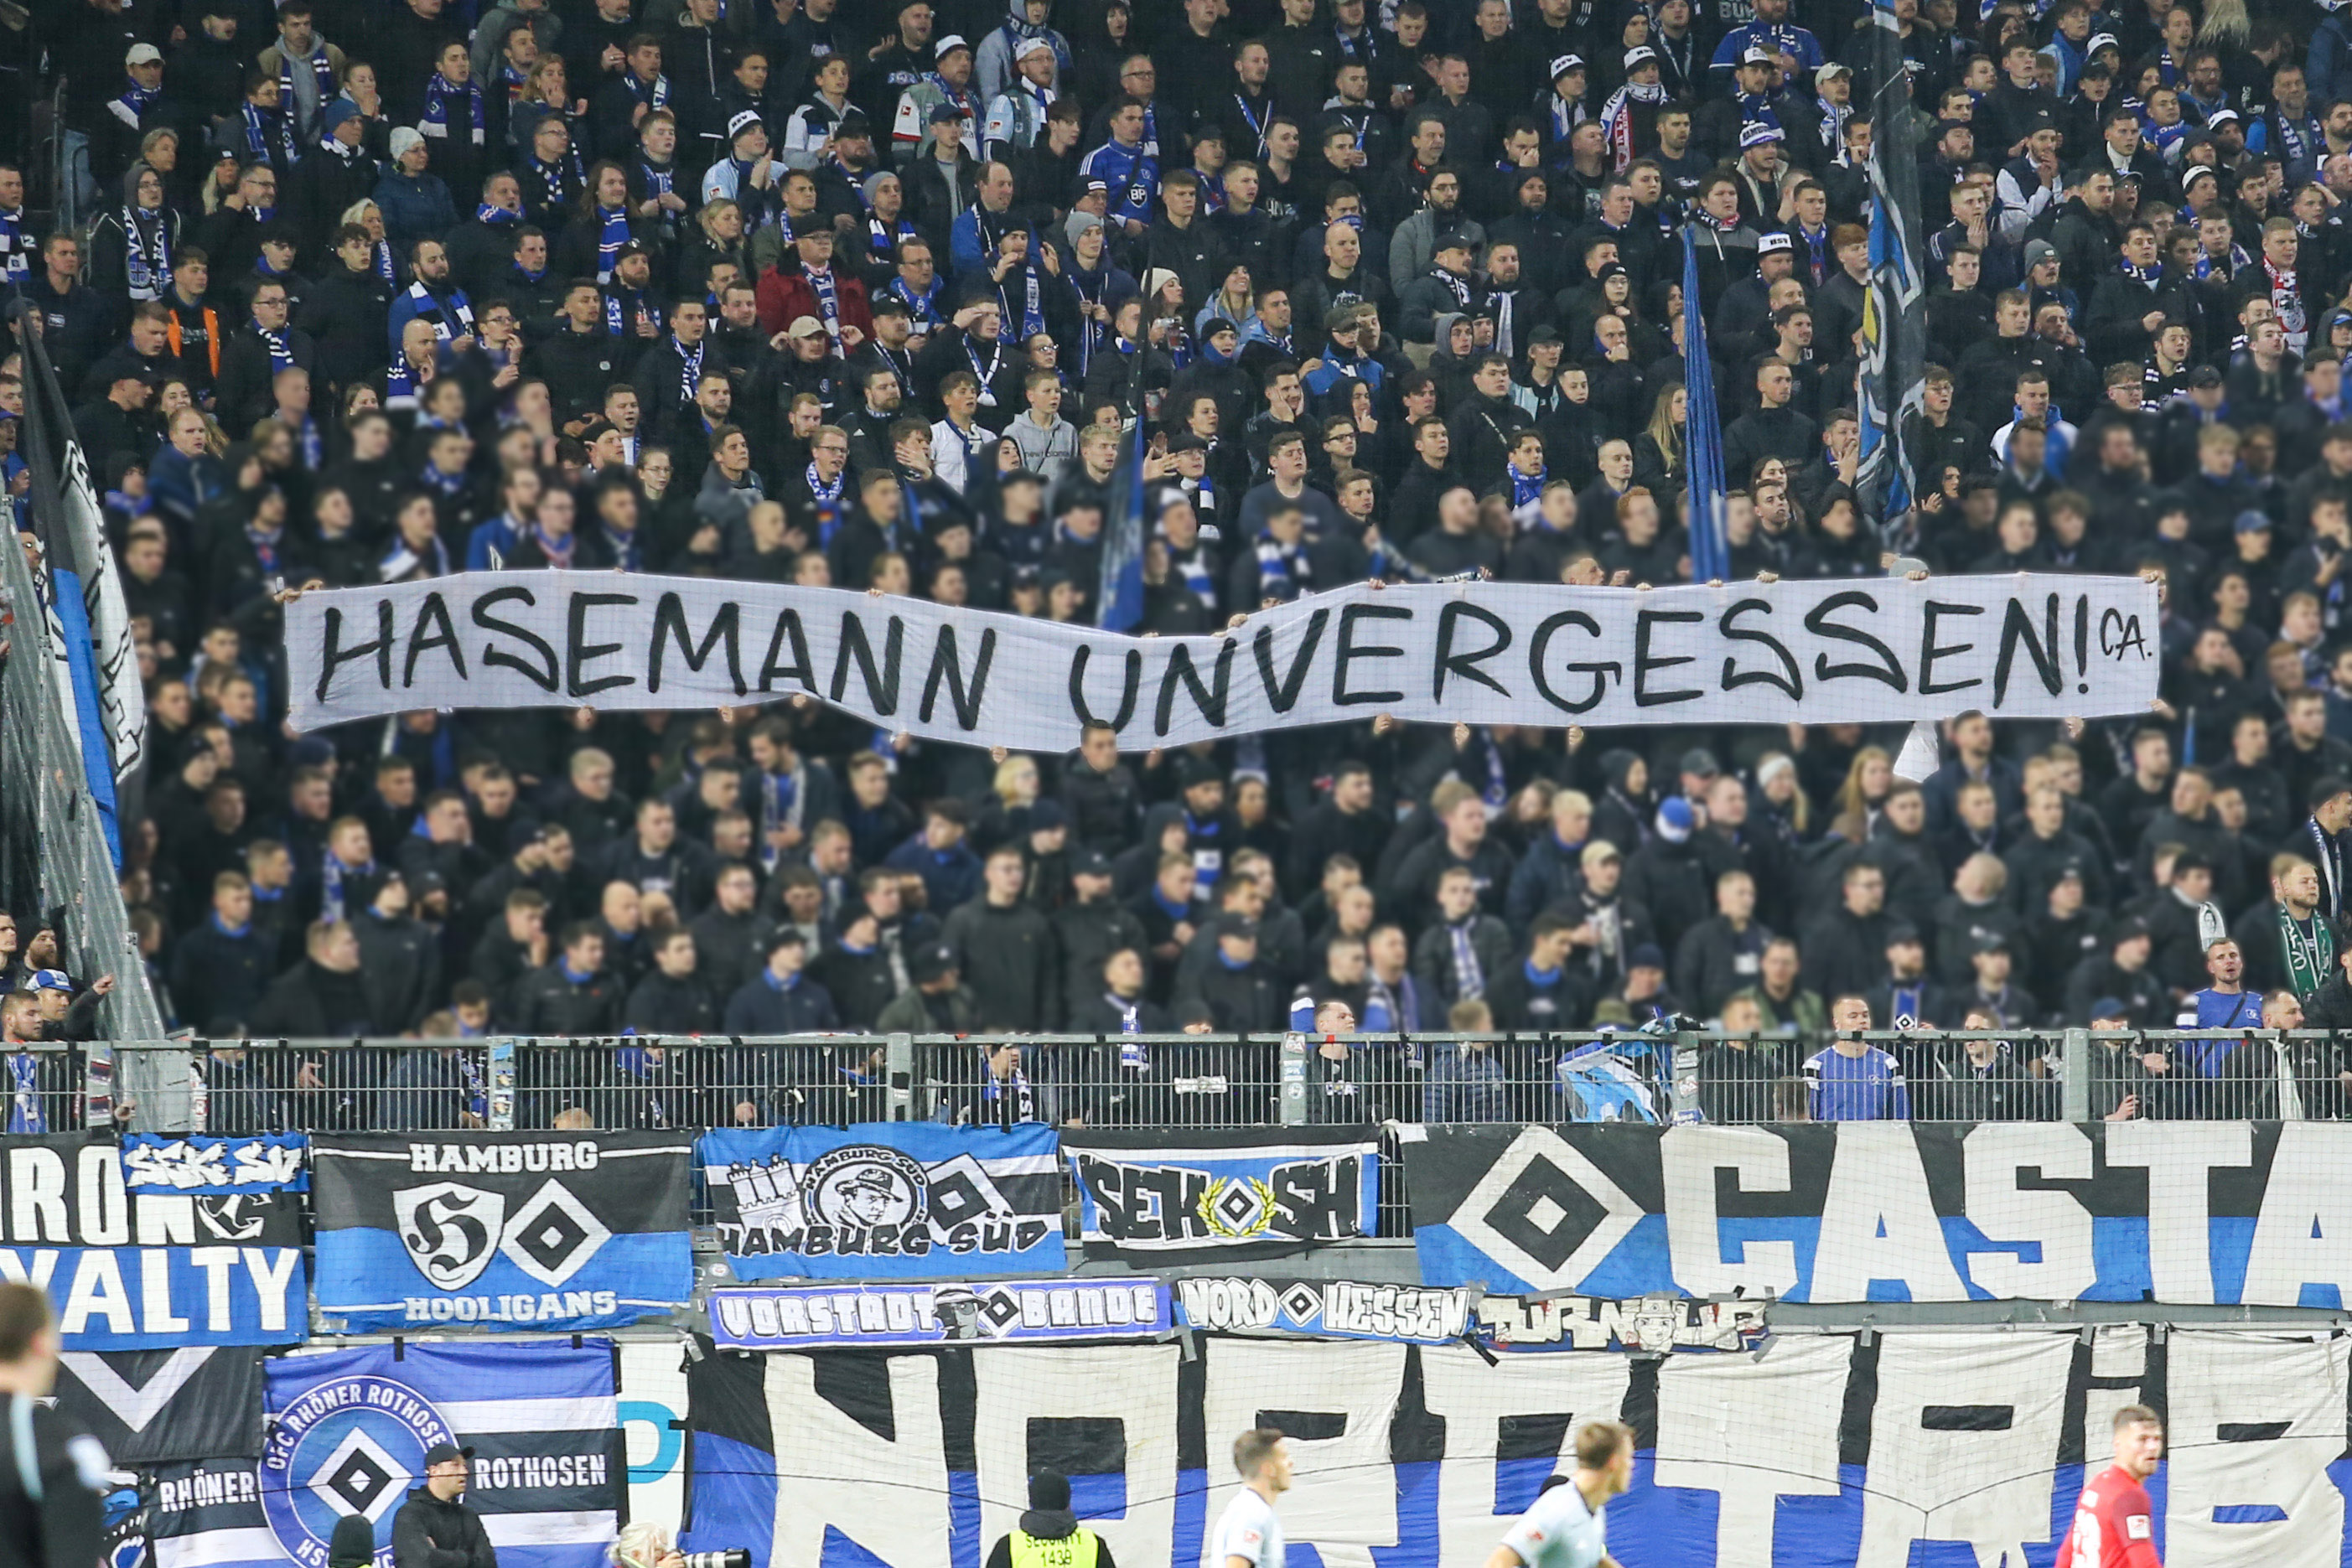 Spruchband der HSV-Fans: Hasemann unvergessen!